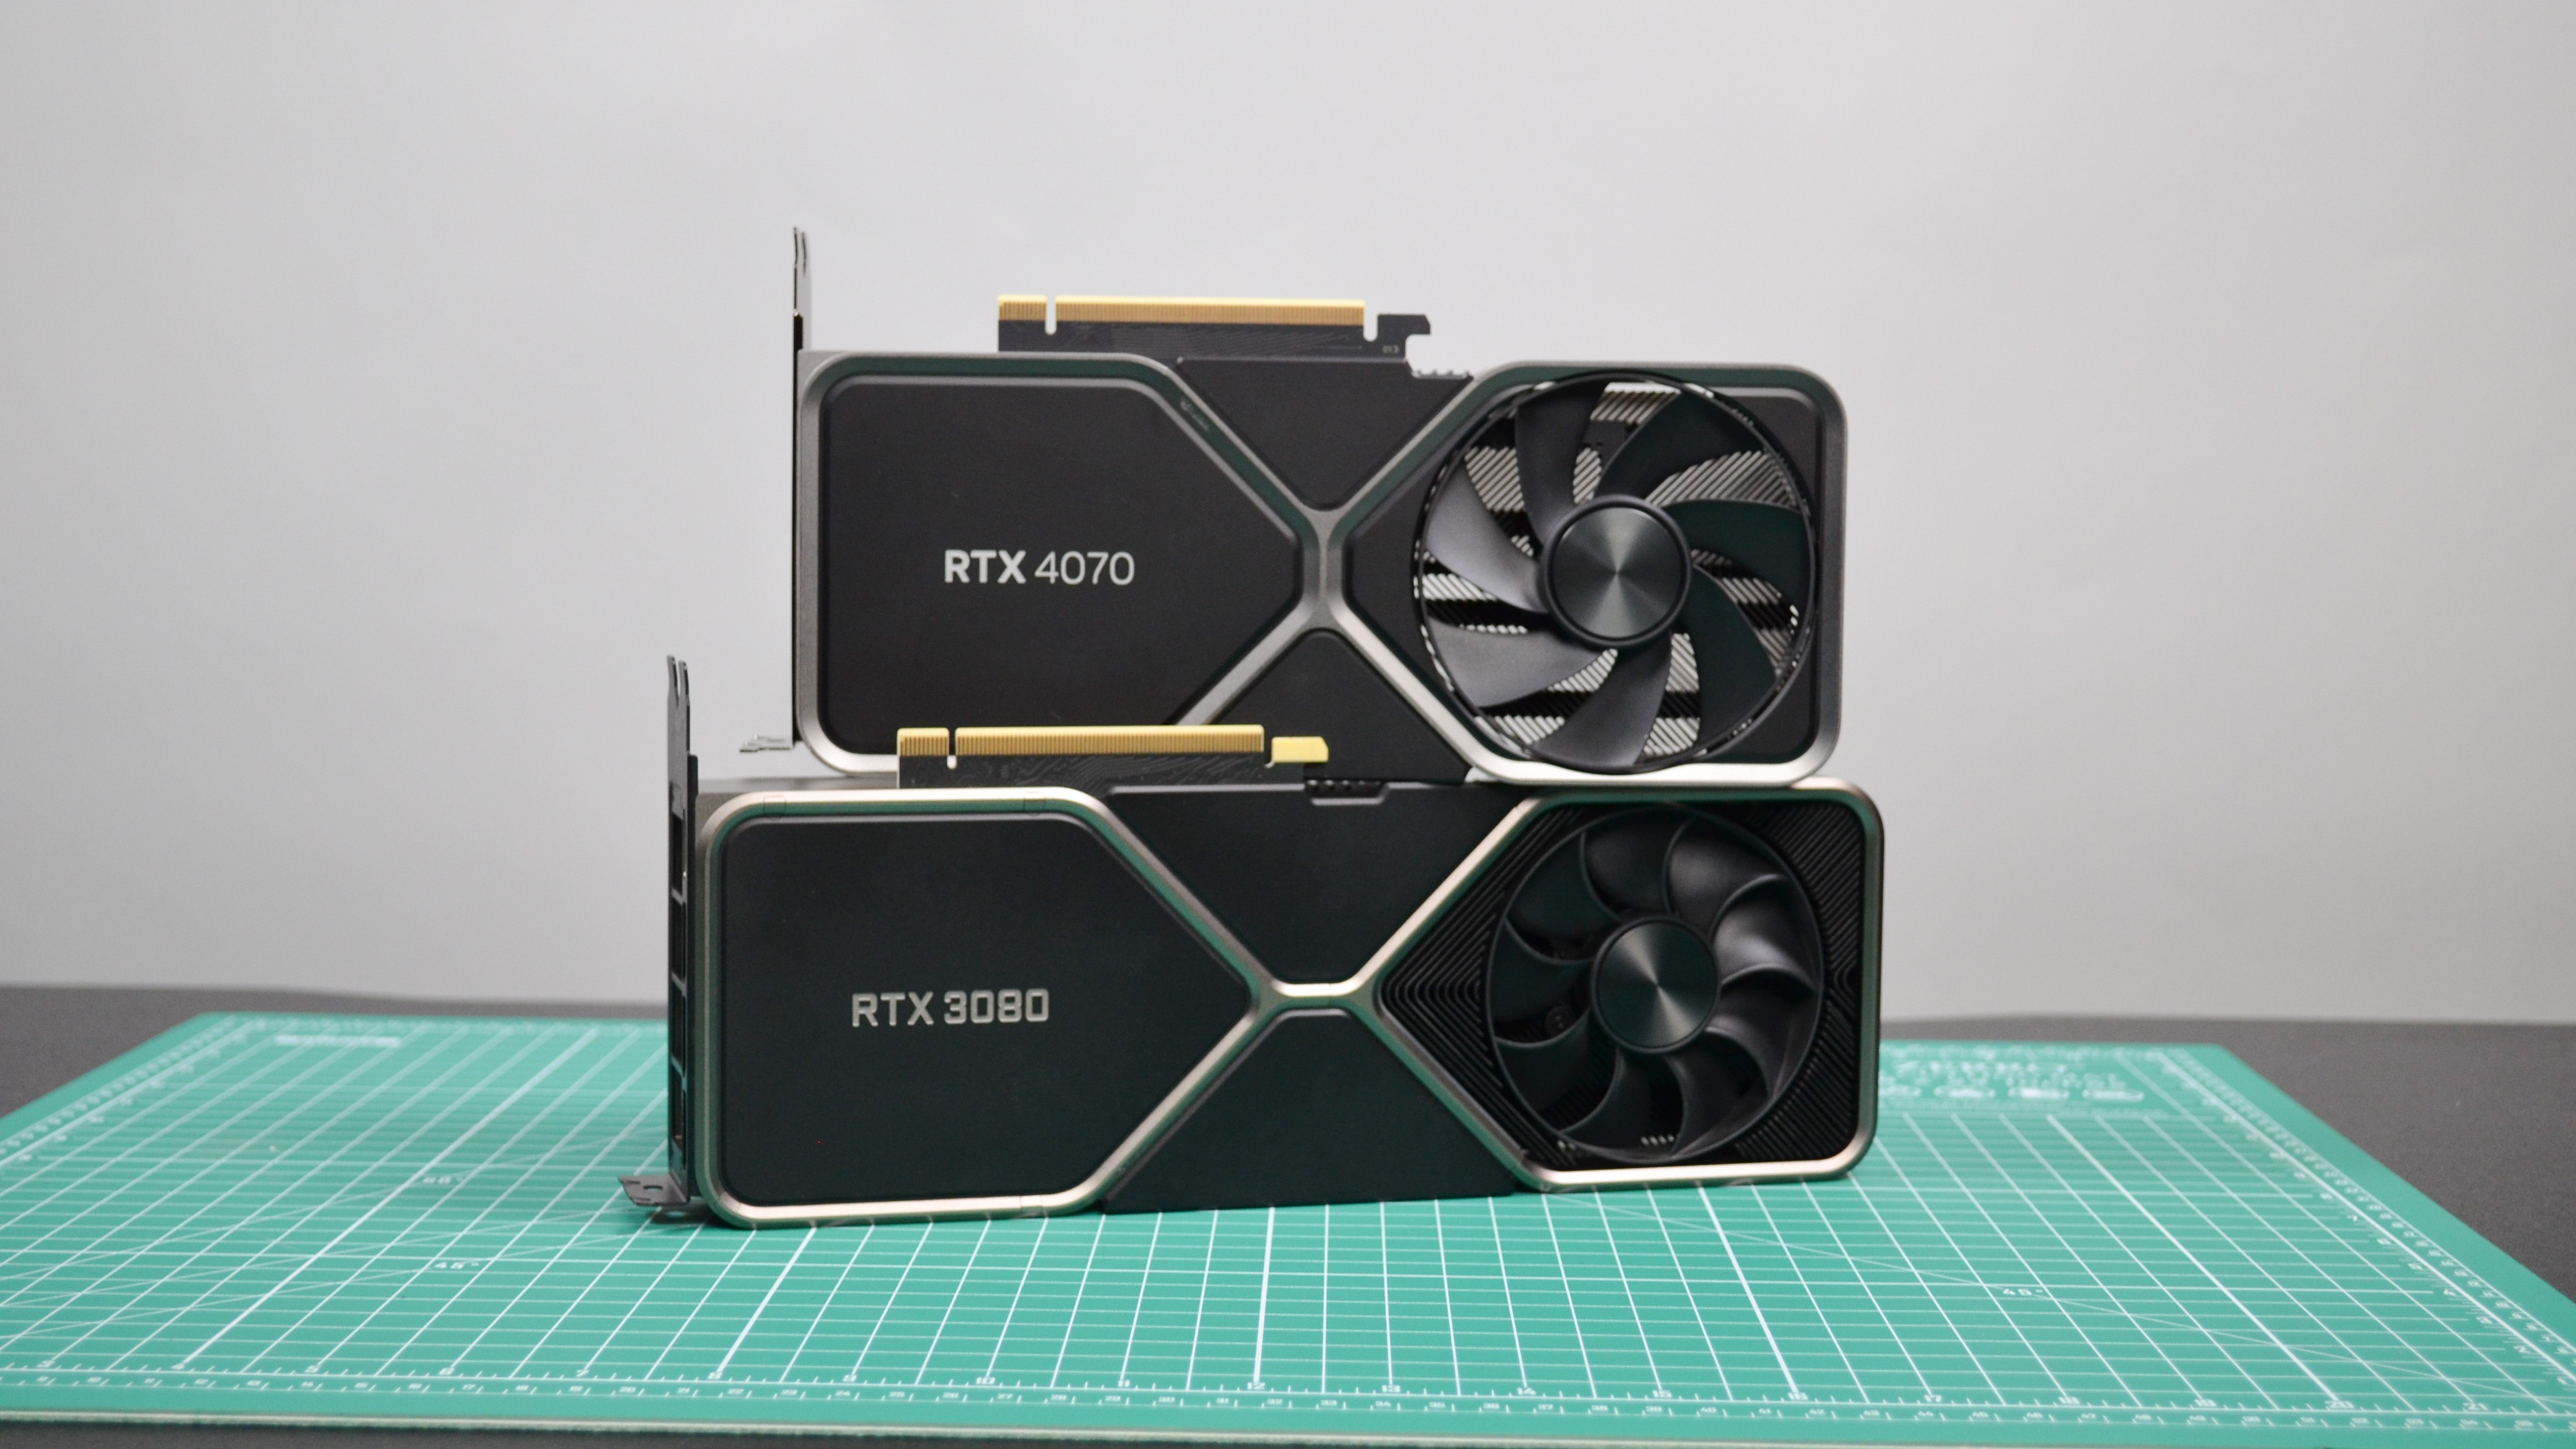 Die Nvidia RTX 4070 und RTX 3080 zusammen auf einer grünen Arbeitsfläche abgebildet.